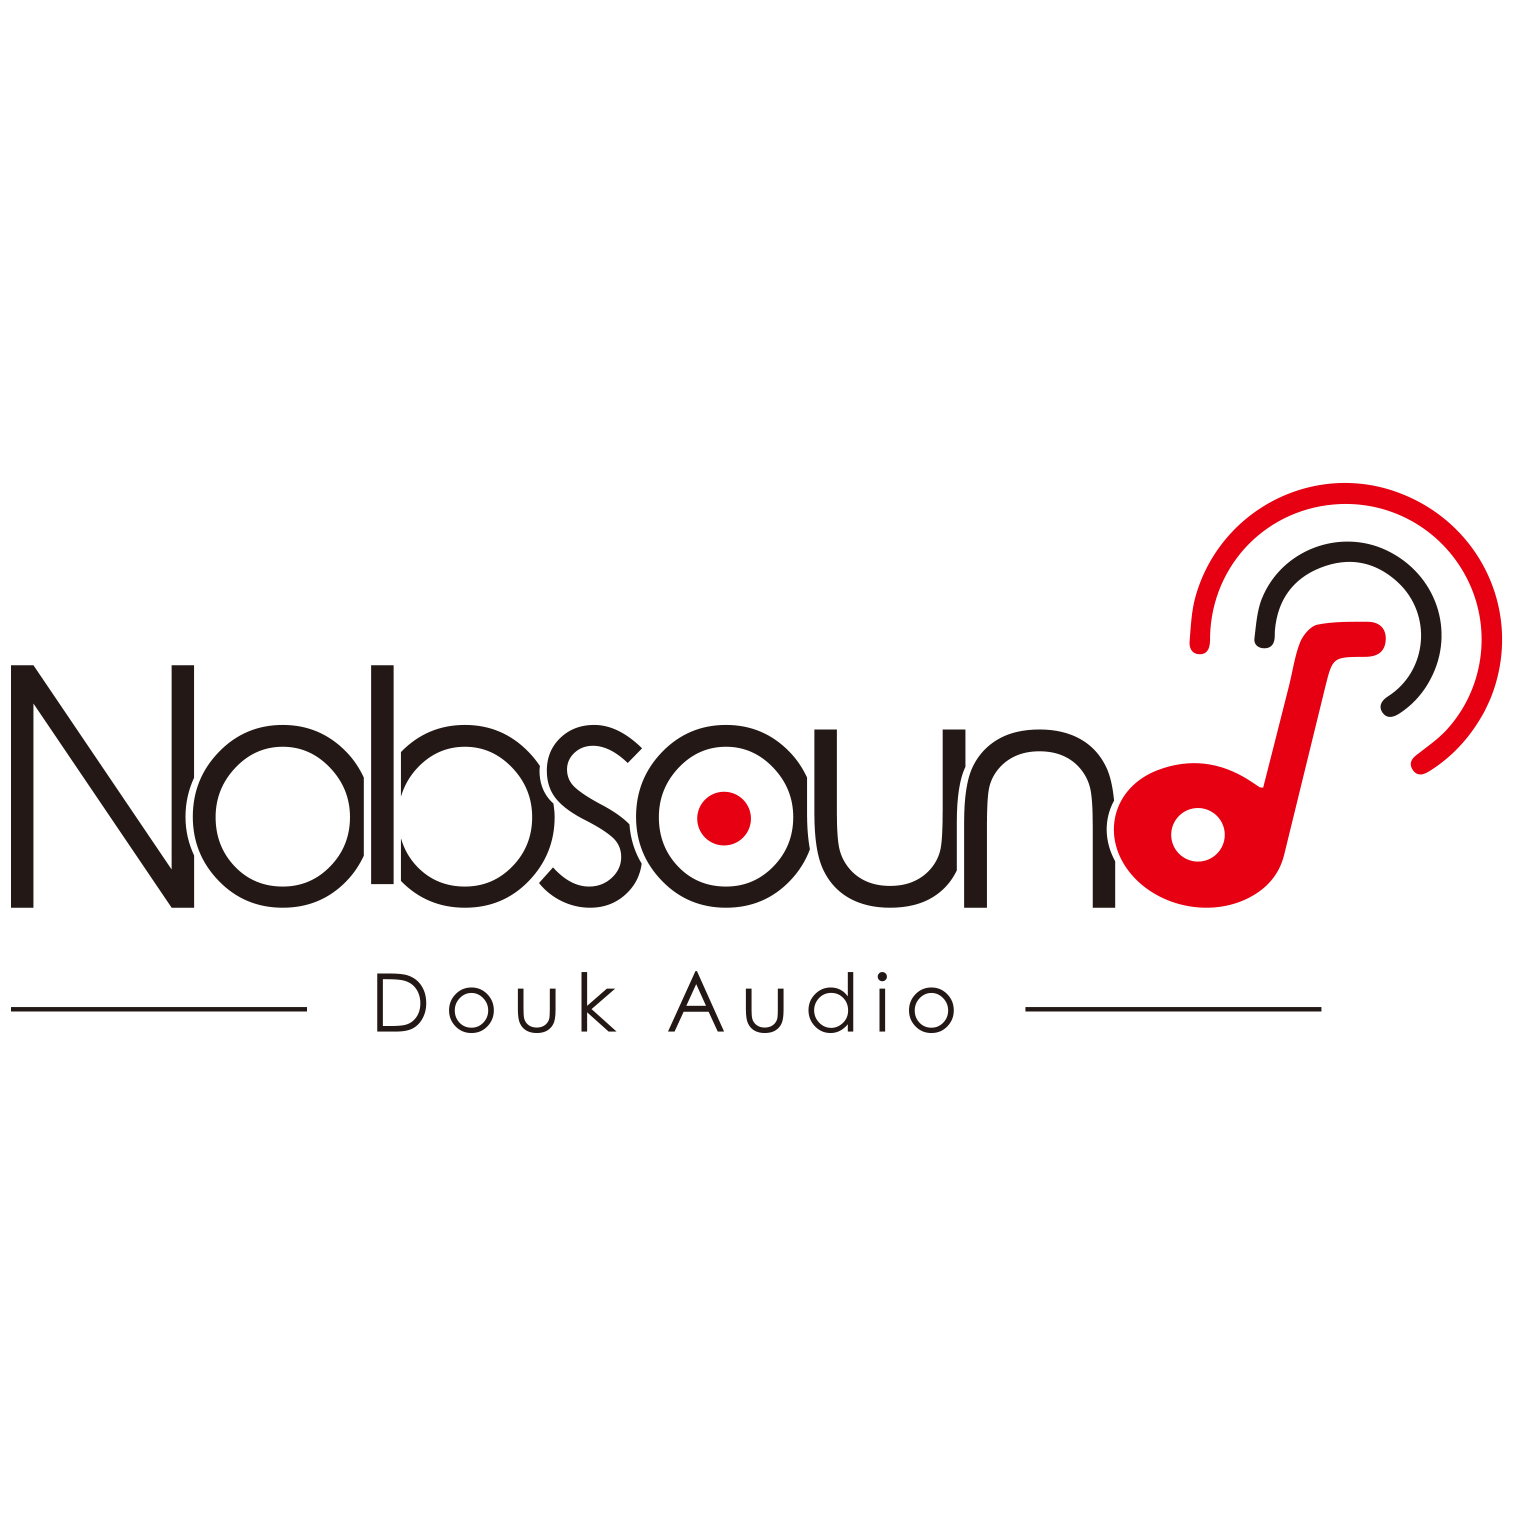 Douk Audio logo